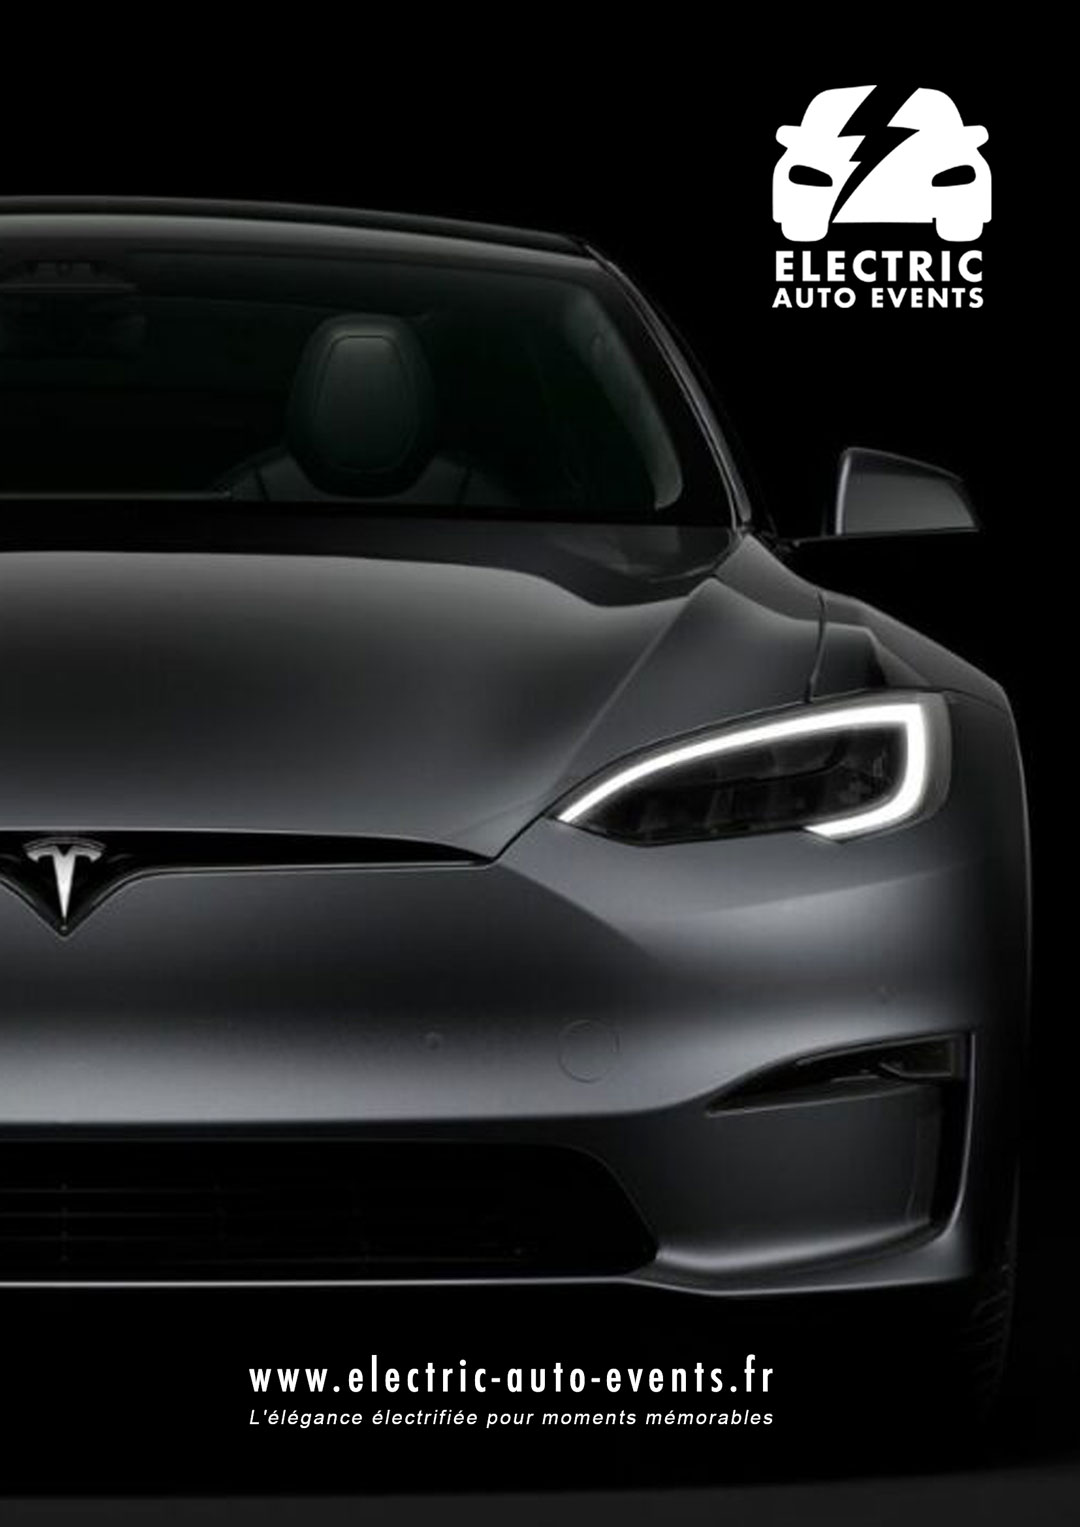 Vos événements méritent l'excellence électrique : Electric Auto EventsLocation Tesla avec chauffeur pour vos évènements à Toulouse et Montauban